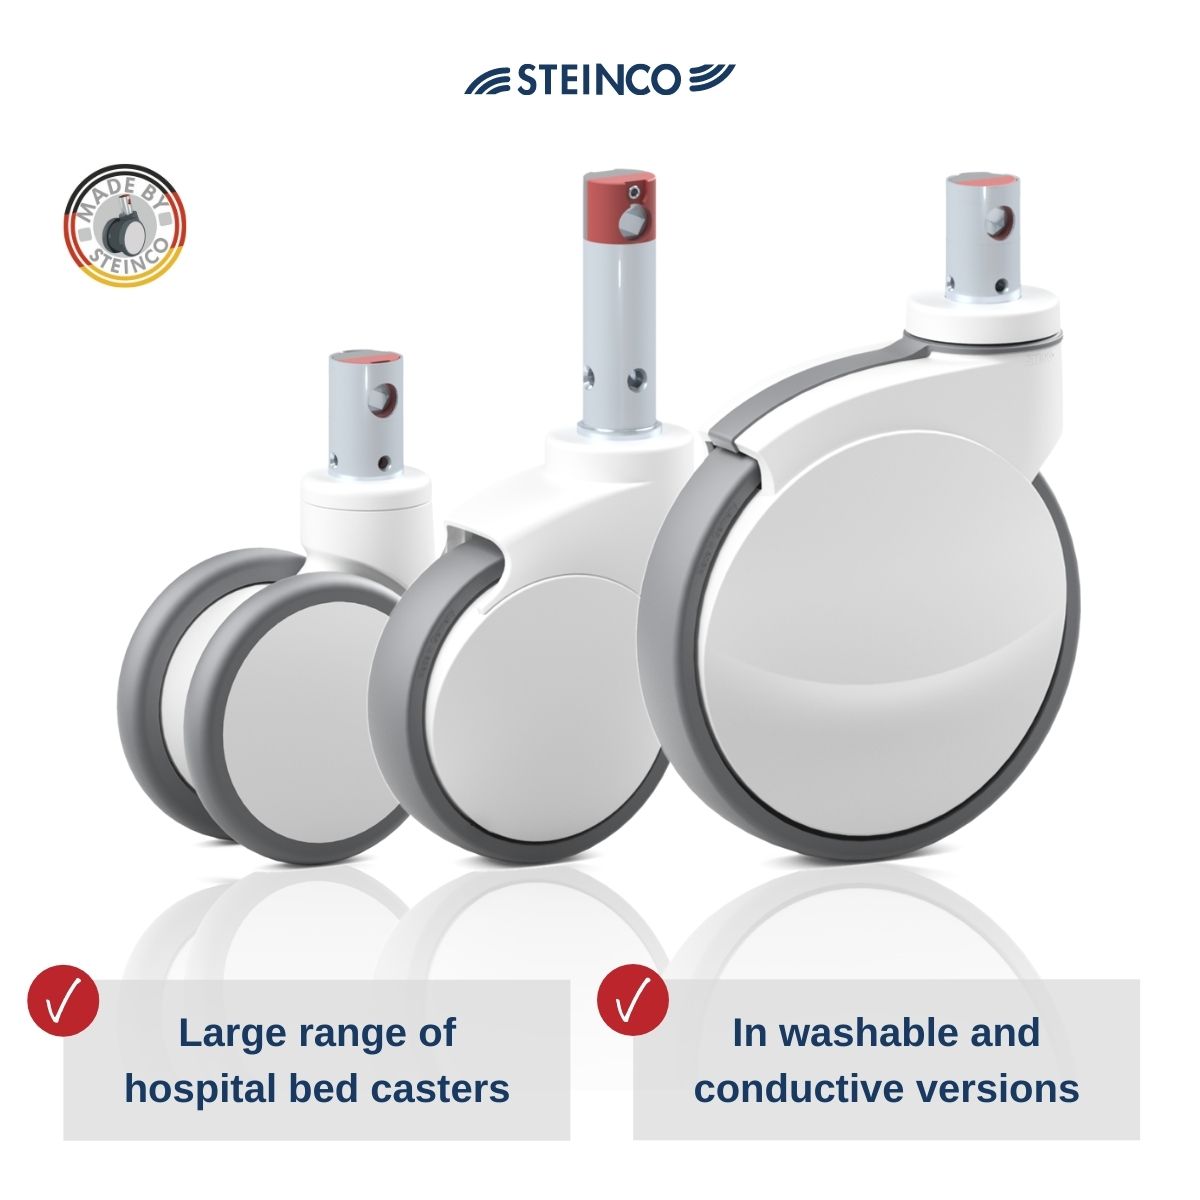 Steinco medicine technology castors - Medical castors Hospital bed Clinic bed Nursing home bed ESD Washable